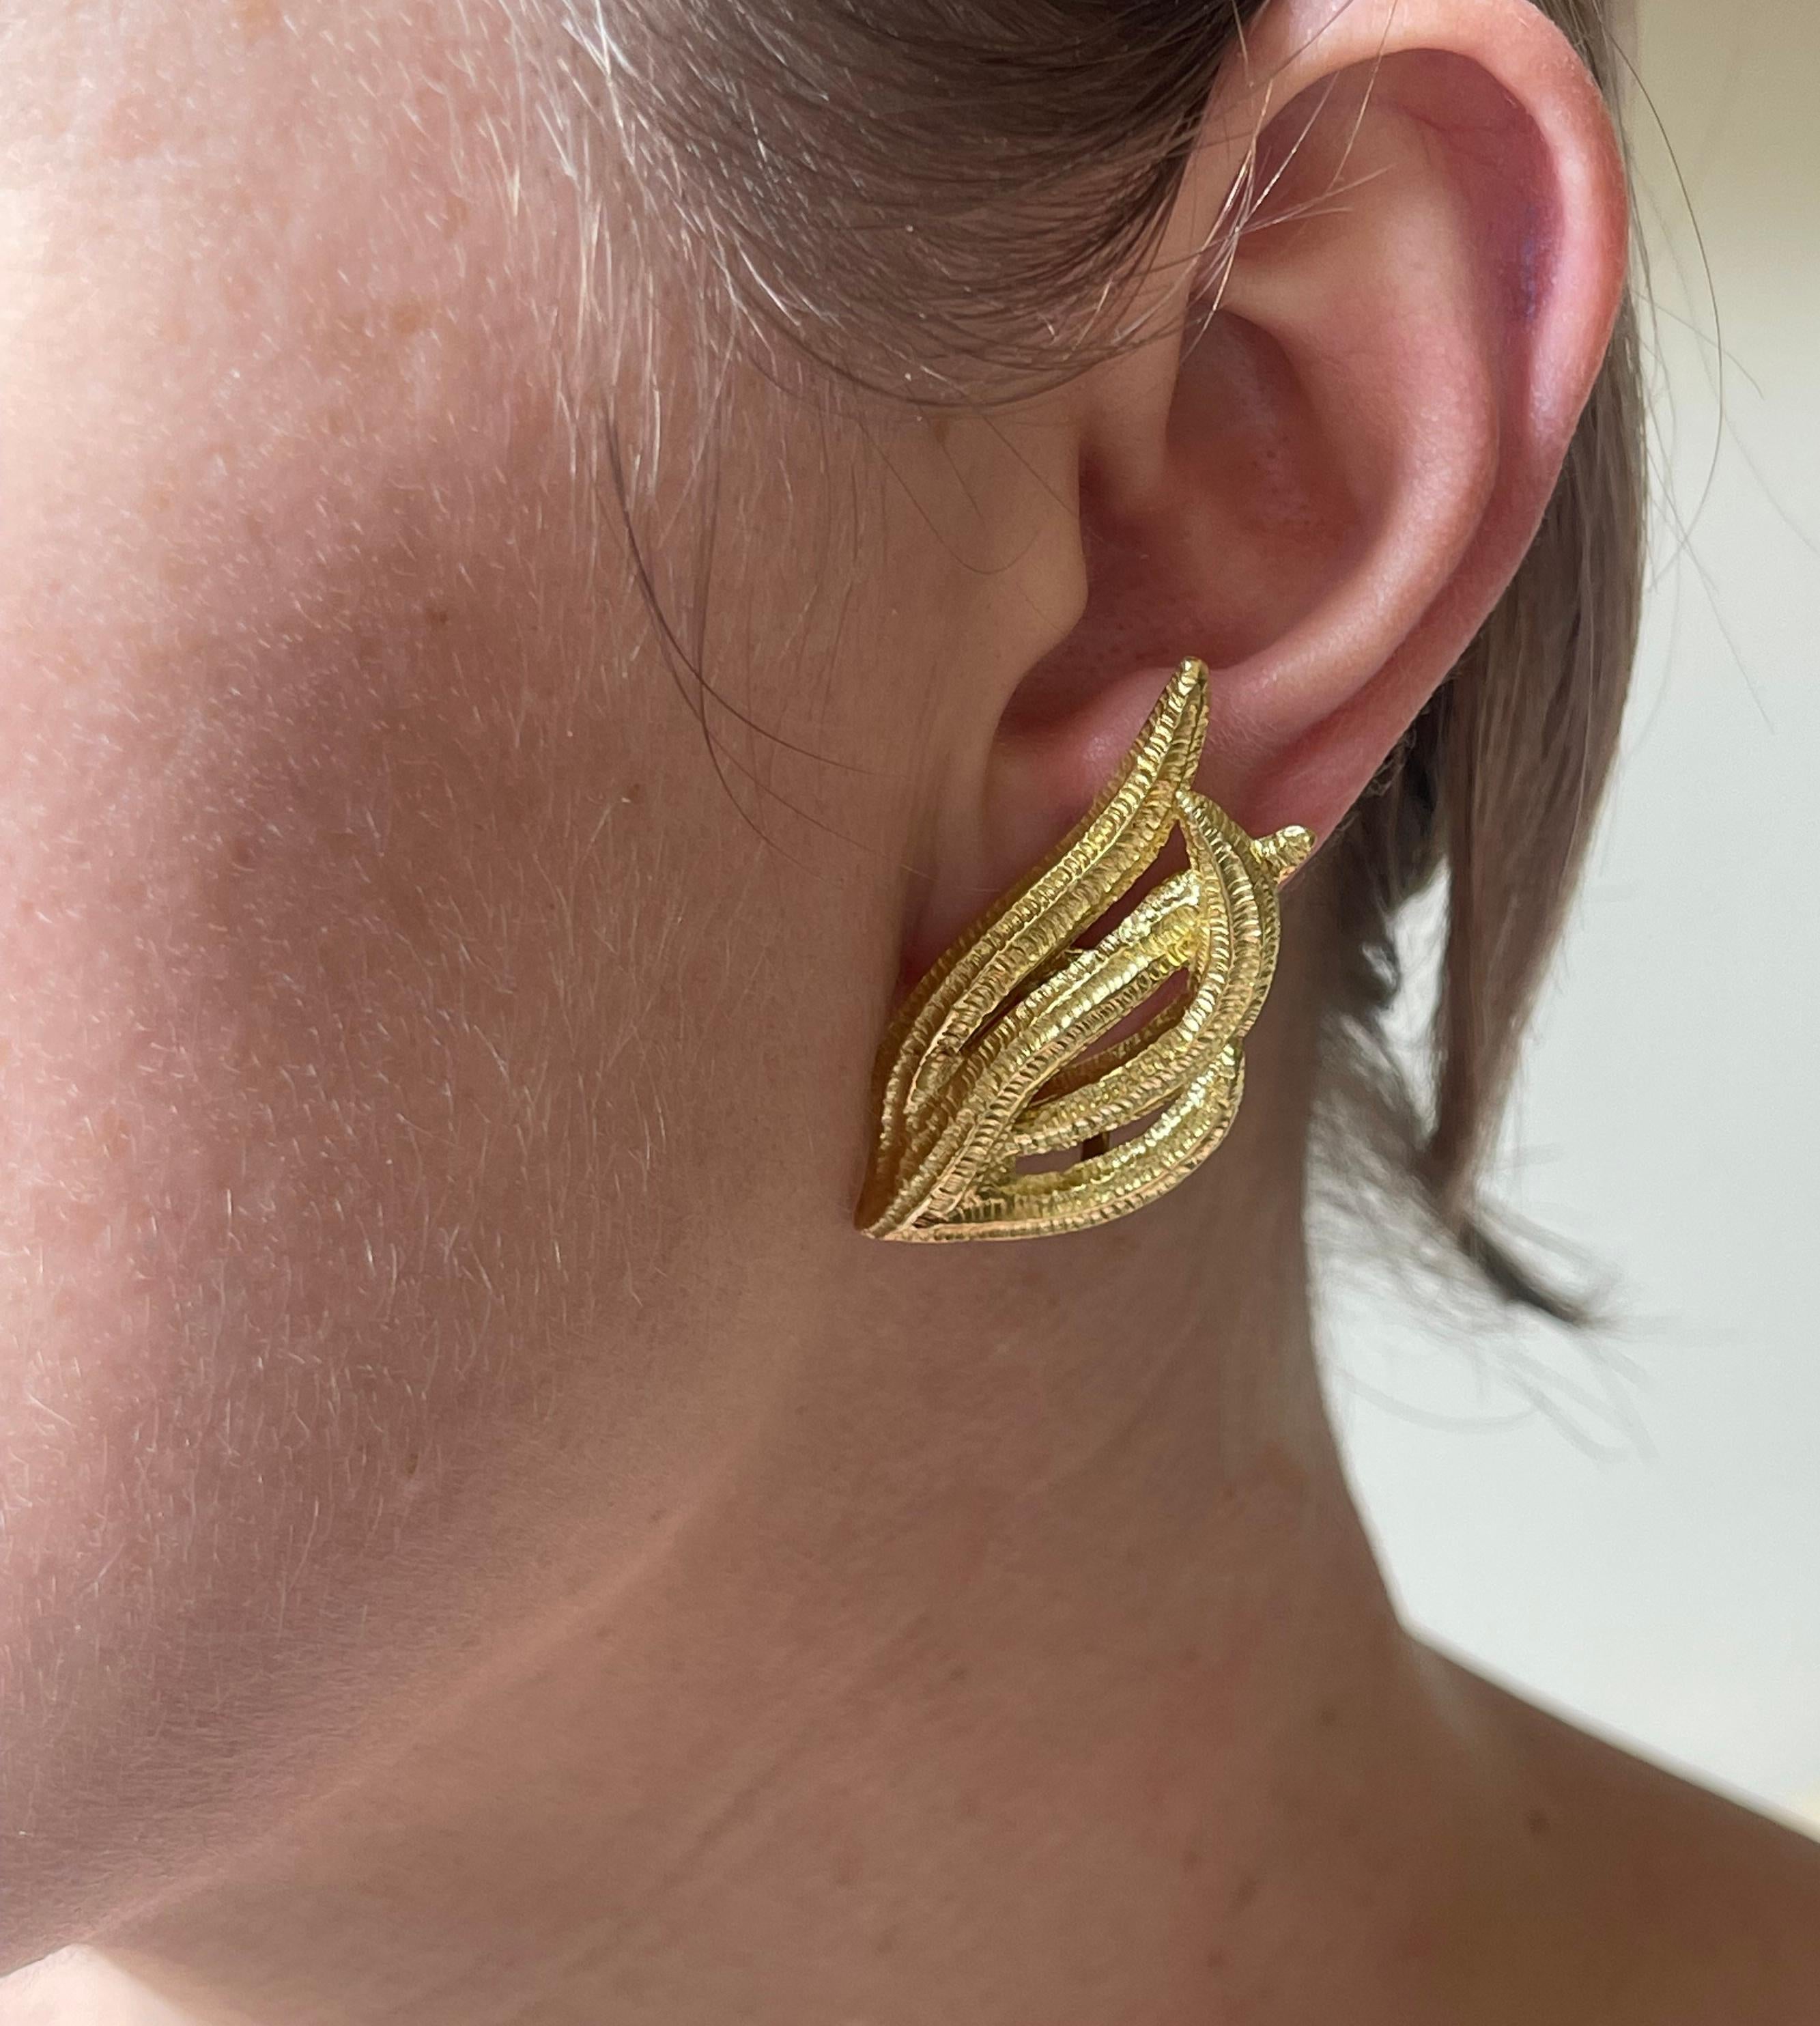 Paar Vintage-Ohrringe aus 18-karätigem Gold, ein Stift fehlt, kann leicht von einem Juwelier angebracht werden. Ohrringe messen 1,75